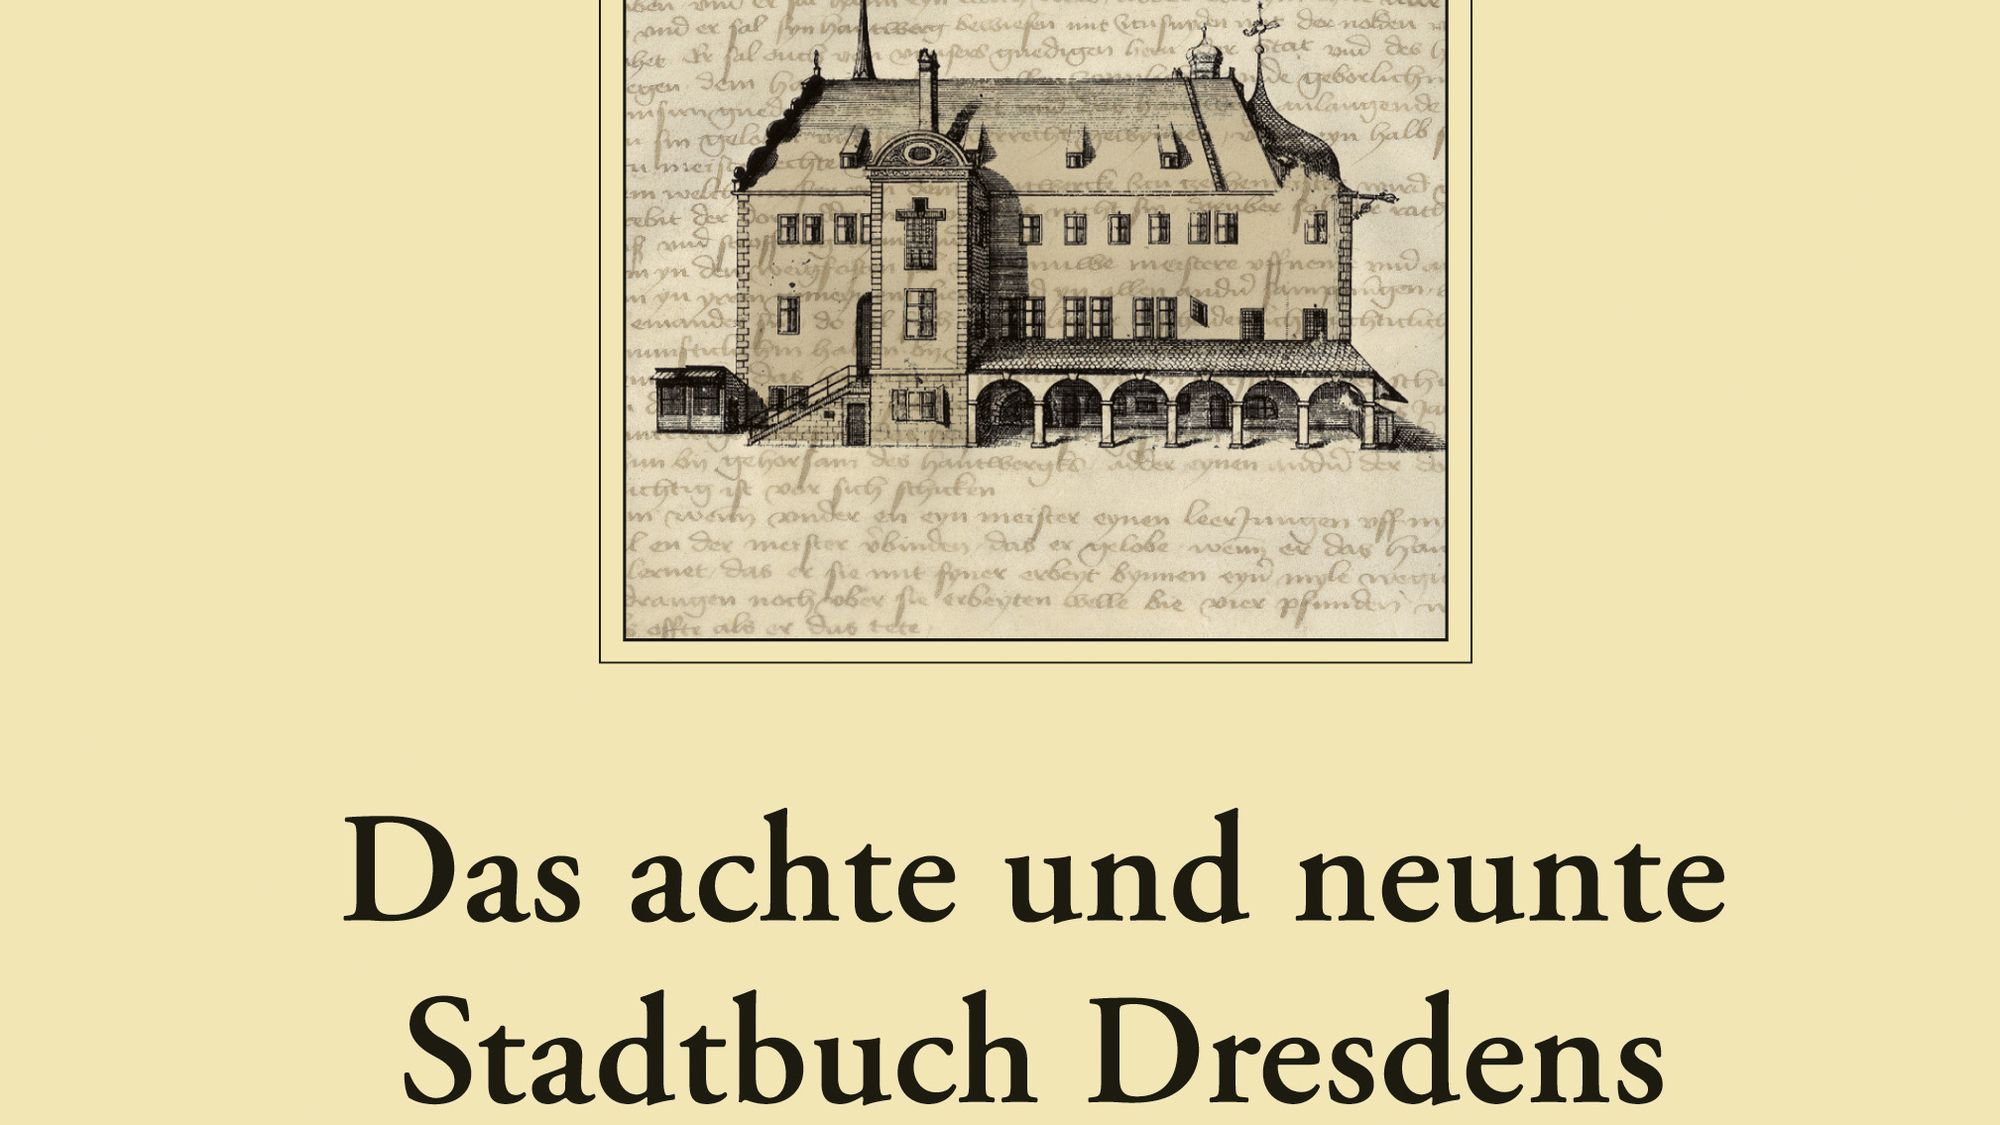 "Das achte und neunte Stadtbuch Dresdens. Leipziger Universitätsverlag 2015."